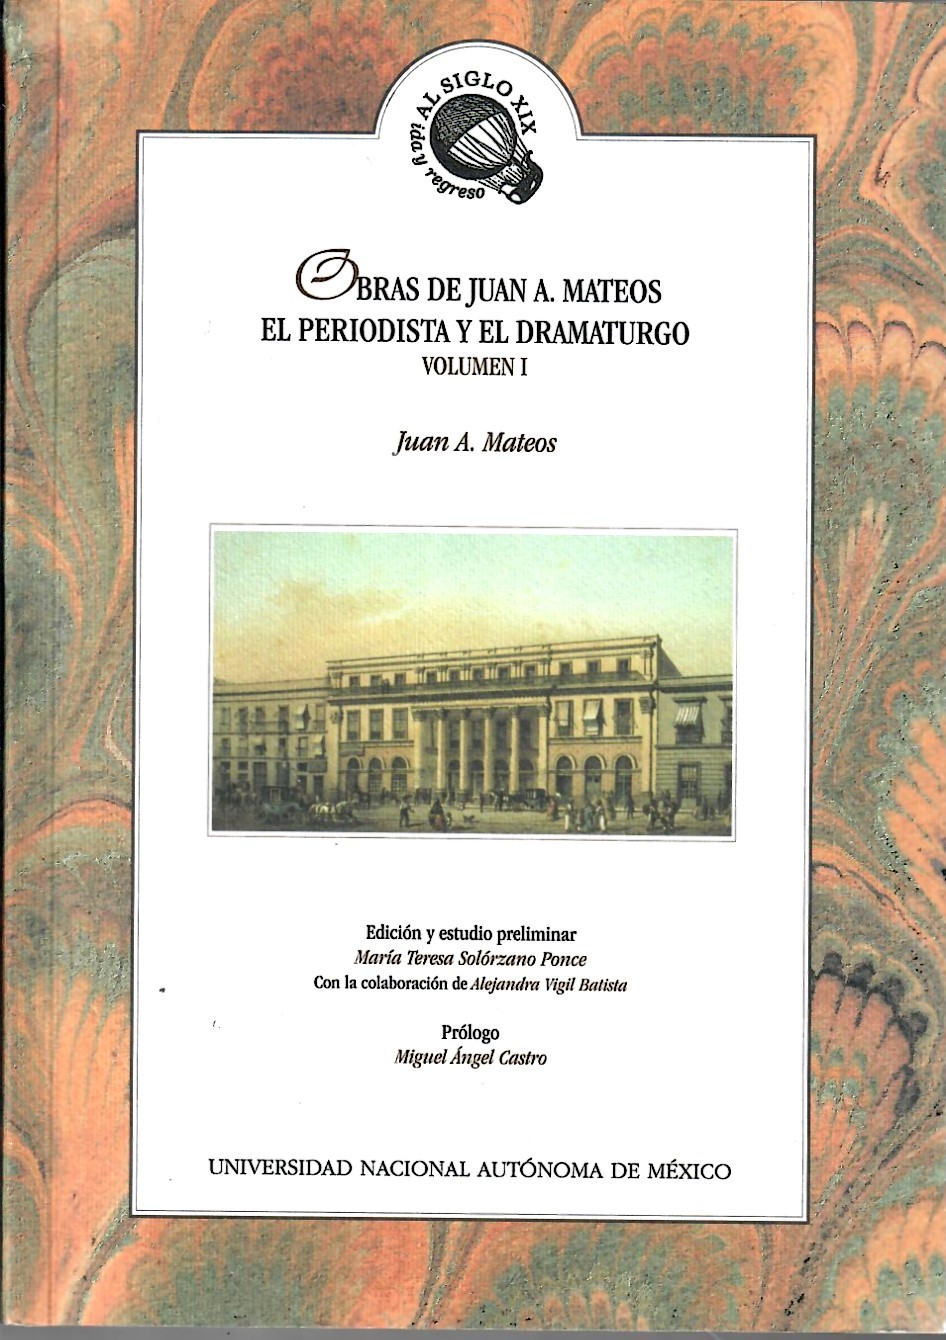 Obras de Juan A. Mateos: el periodista y el dramaturgo Volumen 1